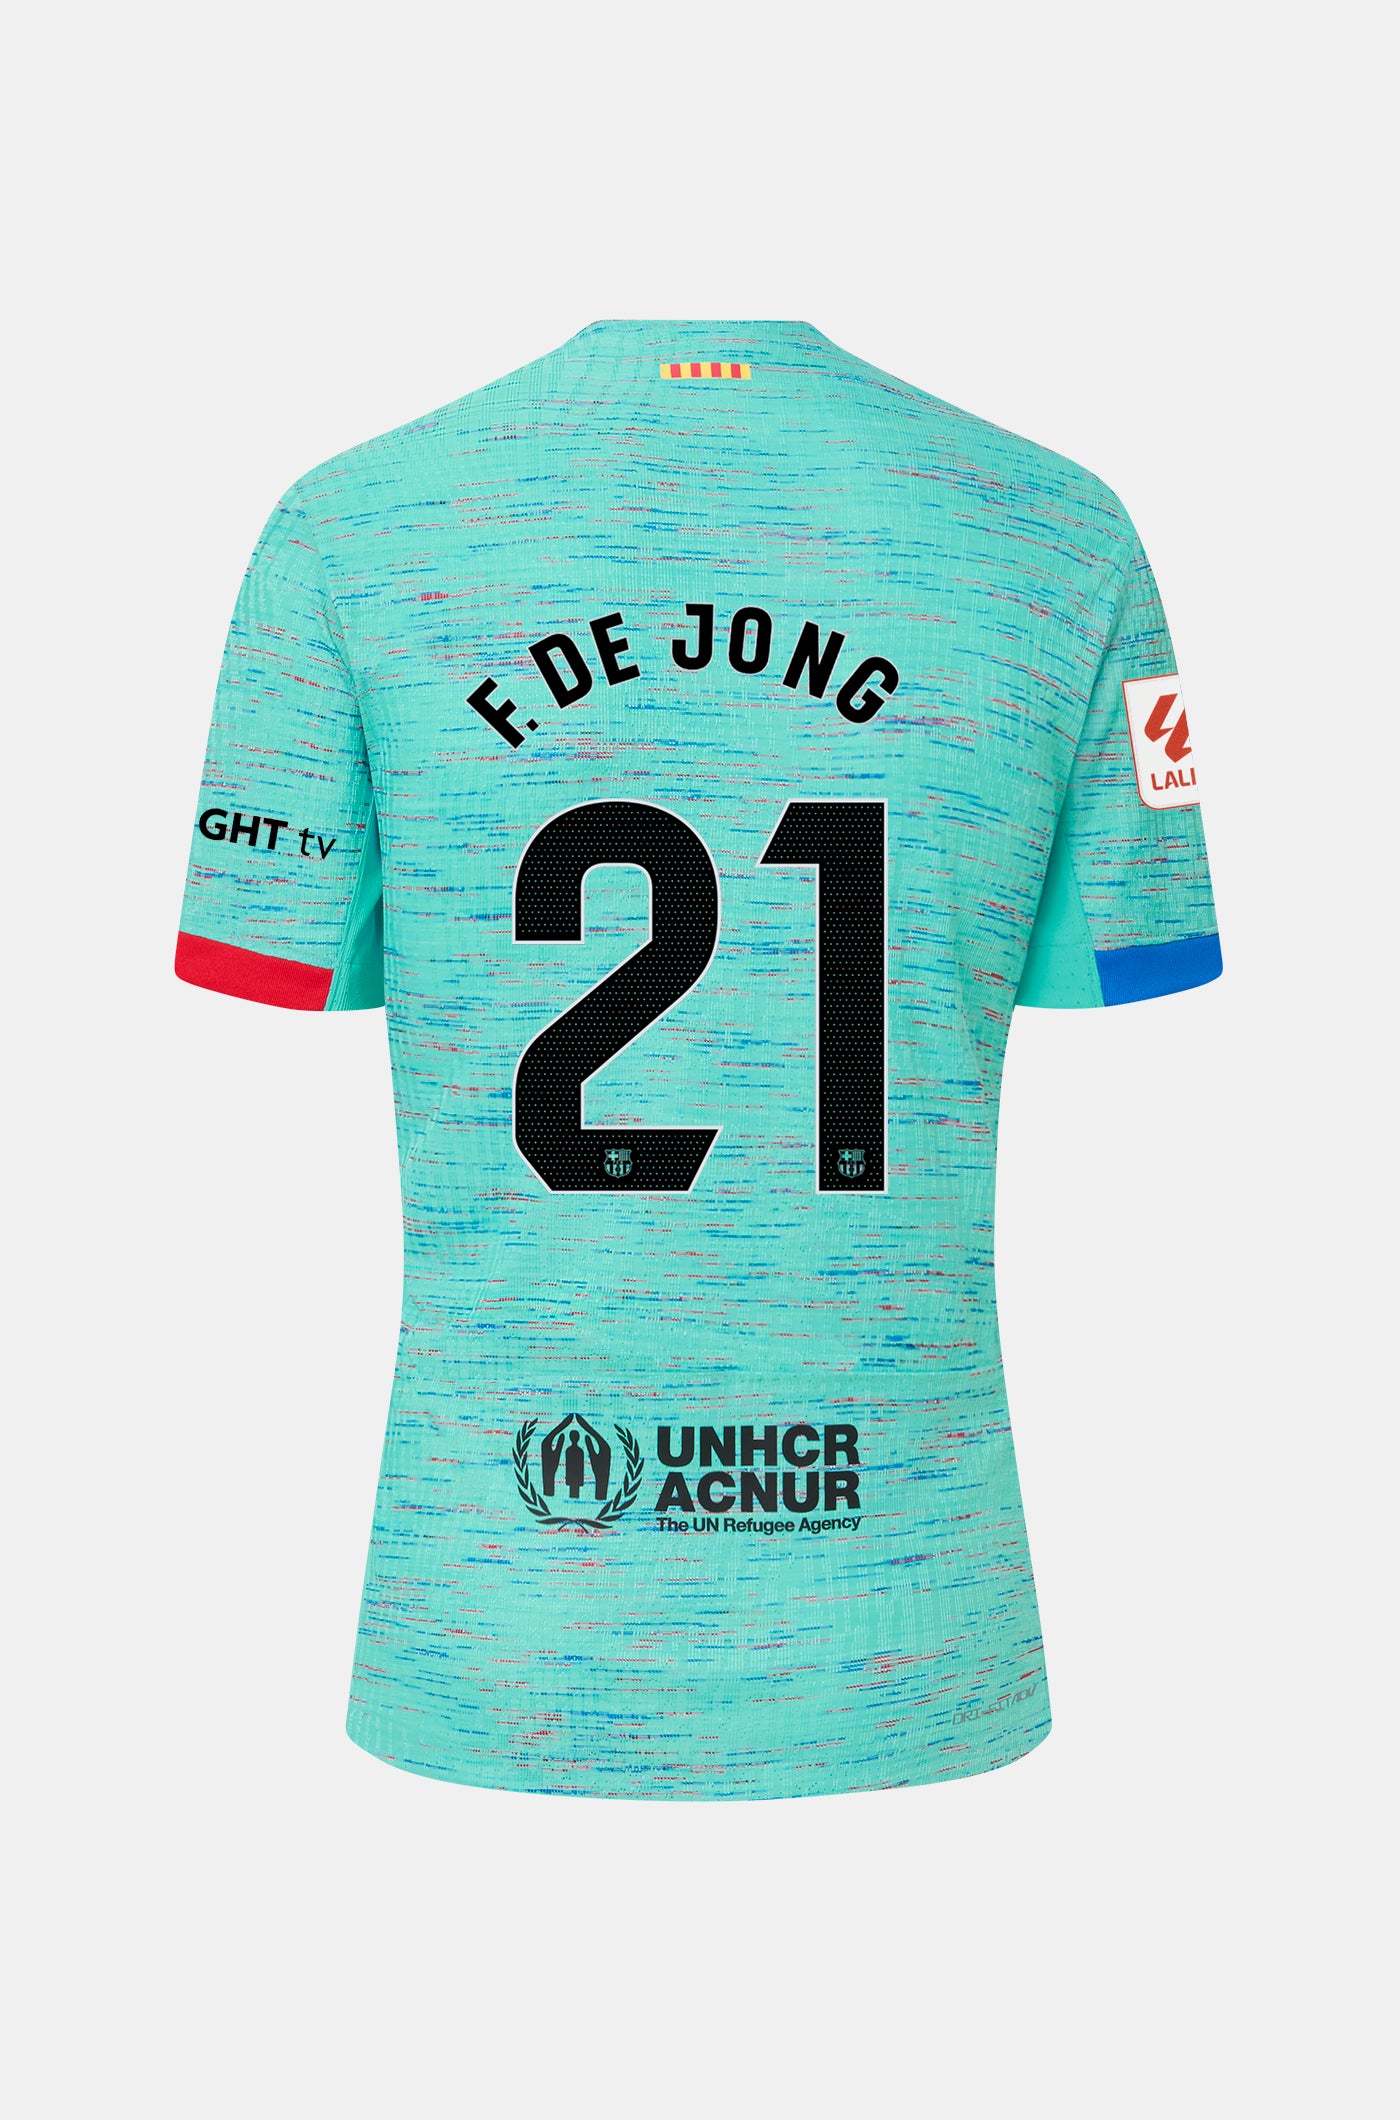 LFP FC Barcelona third shirt 23/24 Player’s Edition  - F. DE JONG